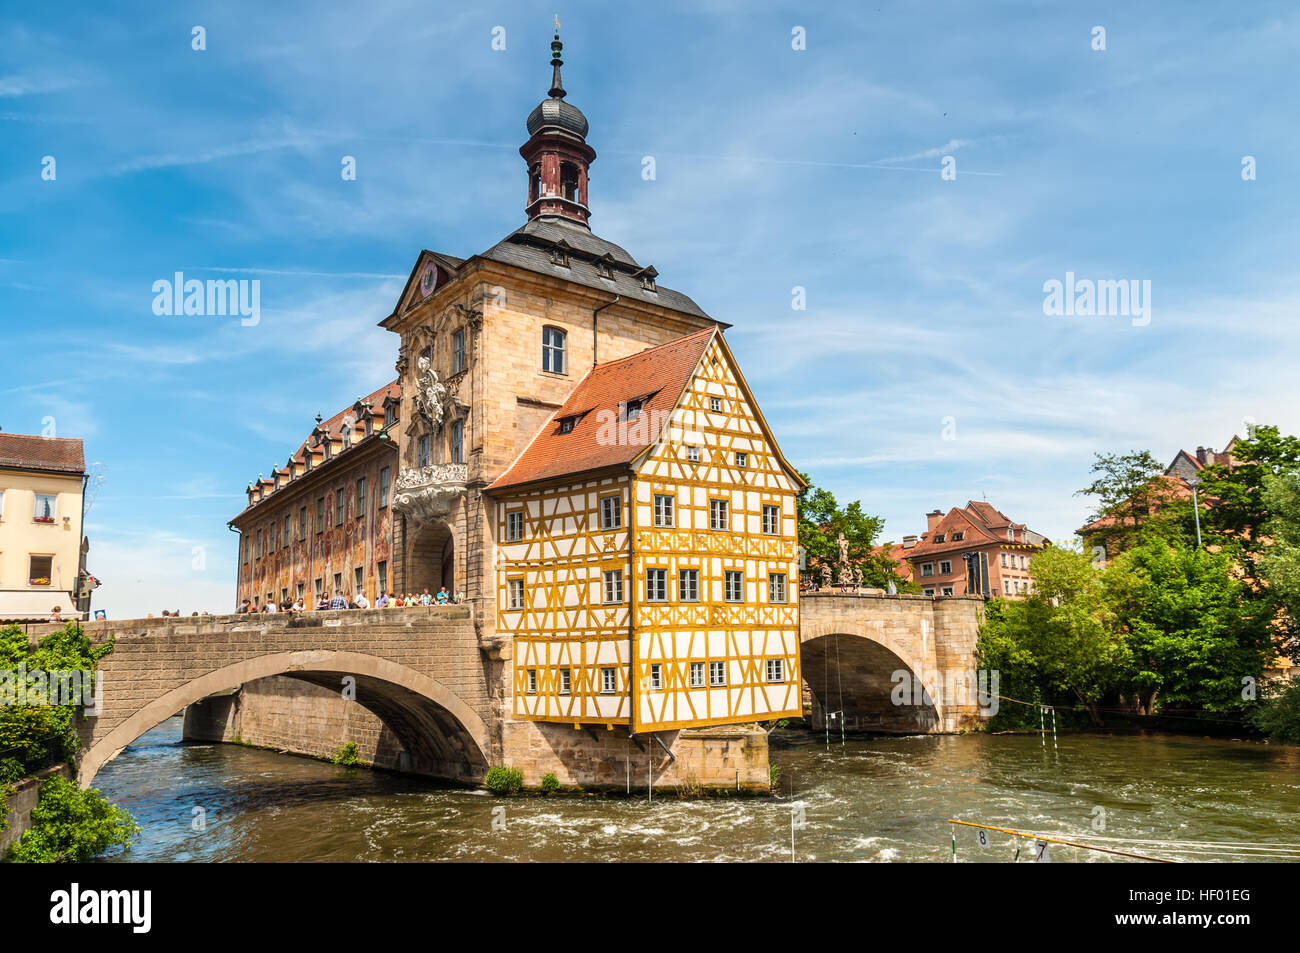 Malerischen Frühling-Blick auf die Altstadt-Architektur mit Rathaus in Bamberg, Deutschland Stockfoto